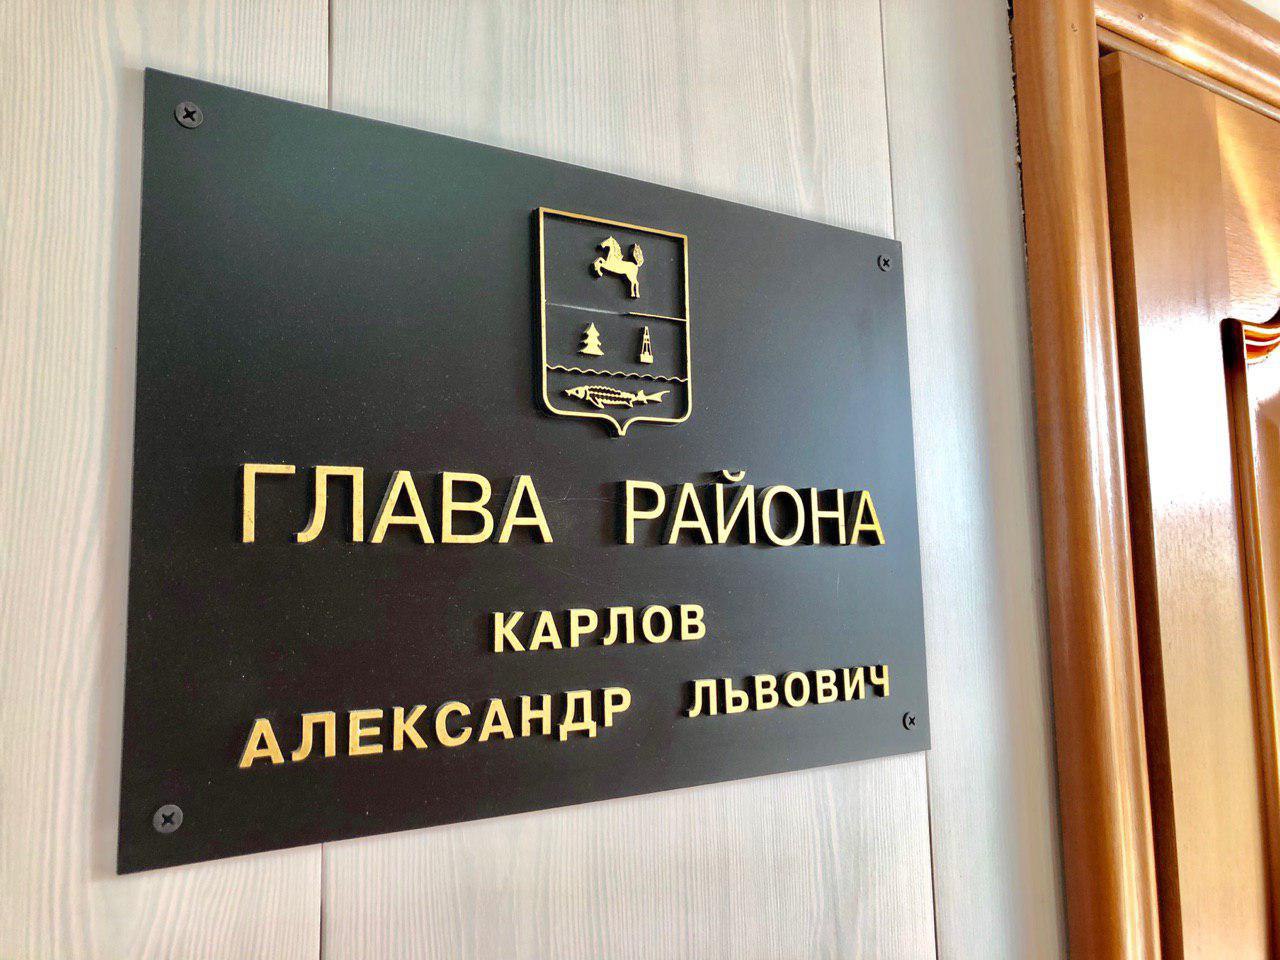 Сегодня в администрации района состоялось очередное аппаратное совещание под руководством главы Александра Карлова.